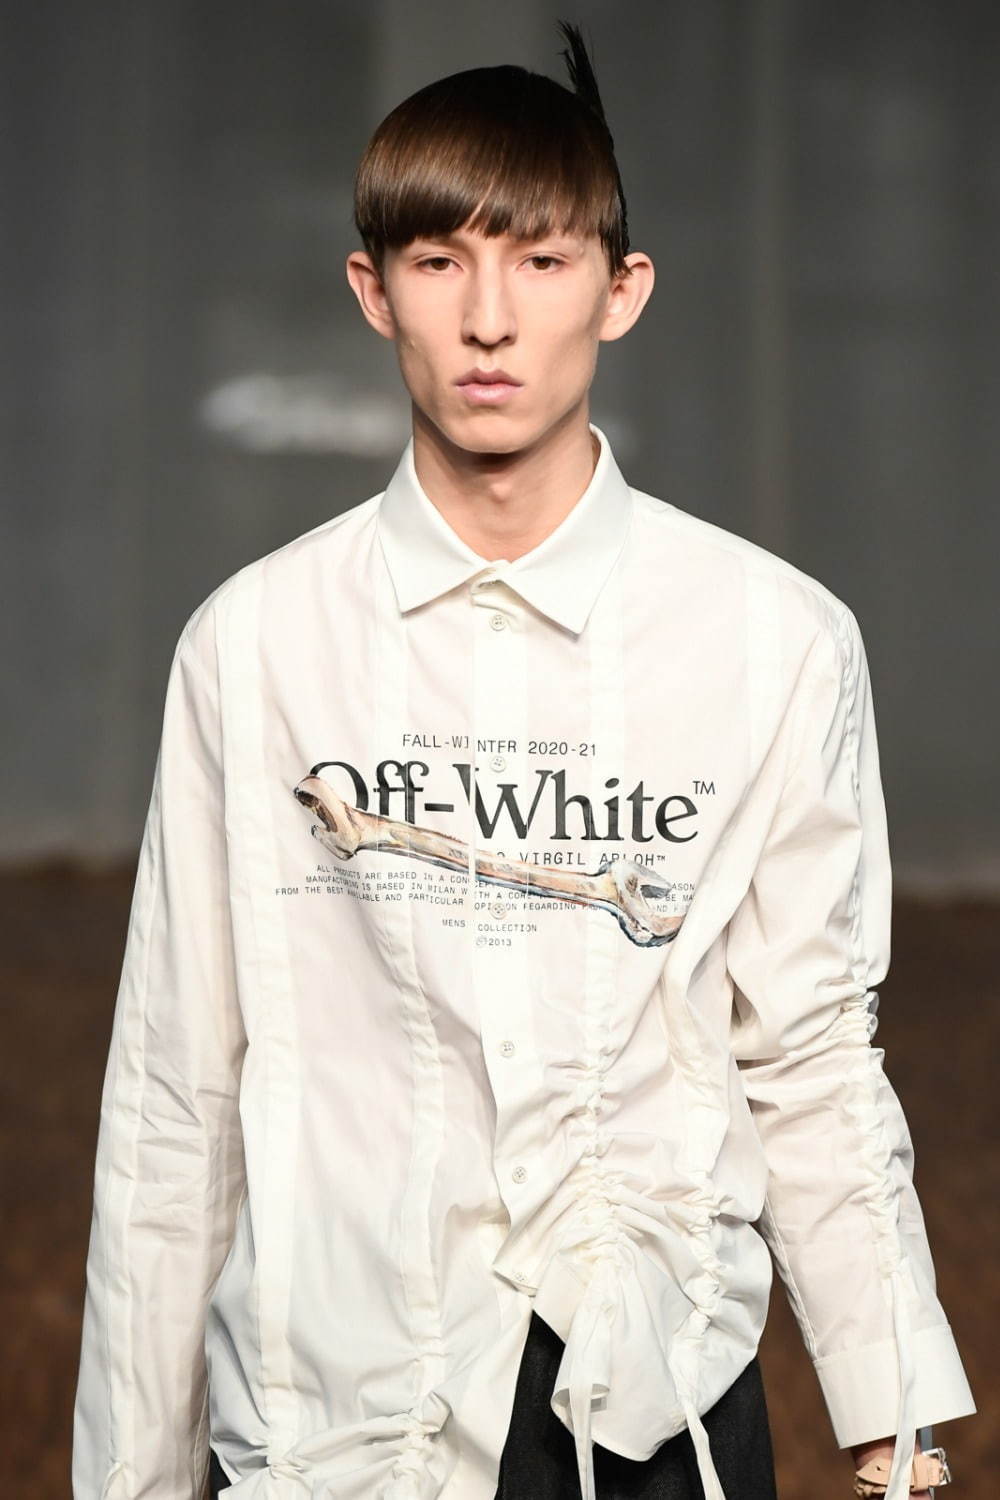 オフ-ホワイト (OFF-WHITE) 2020-21年秋冬メンズコレクション  - 写真23